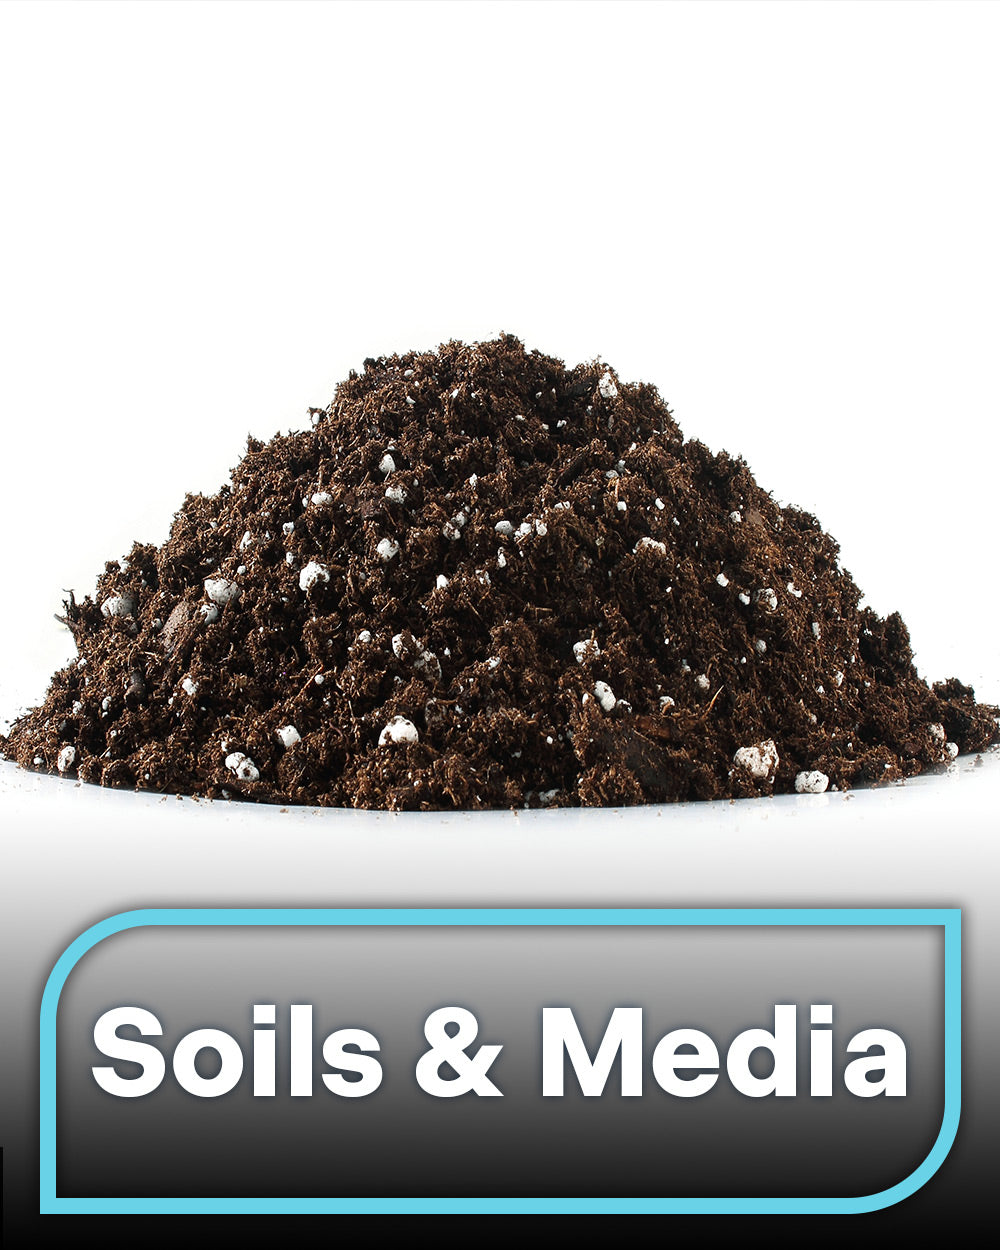 Soils & Media